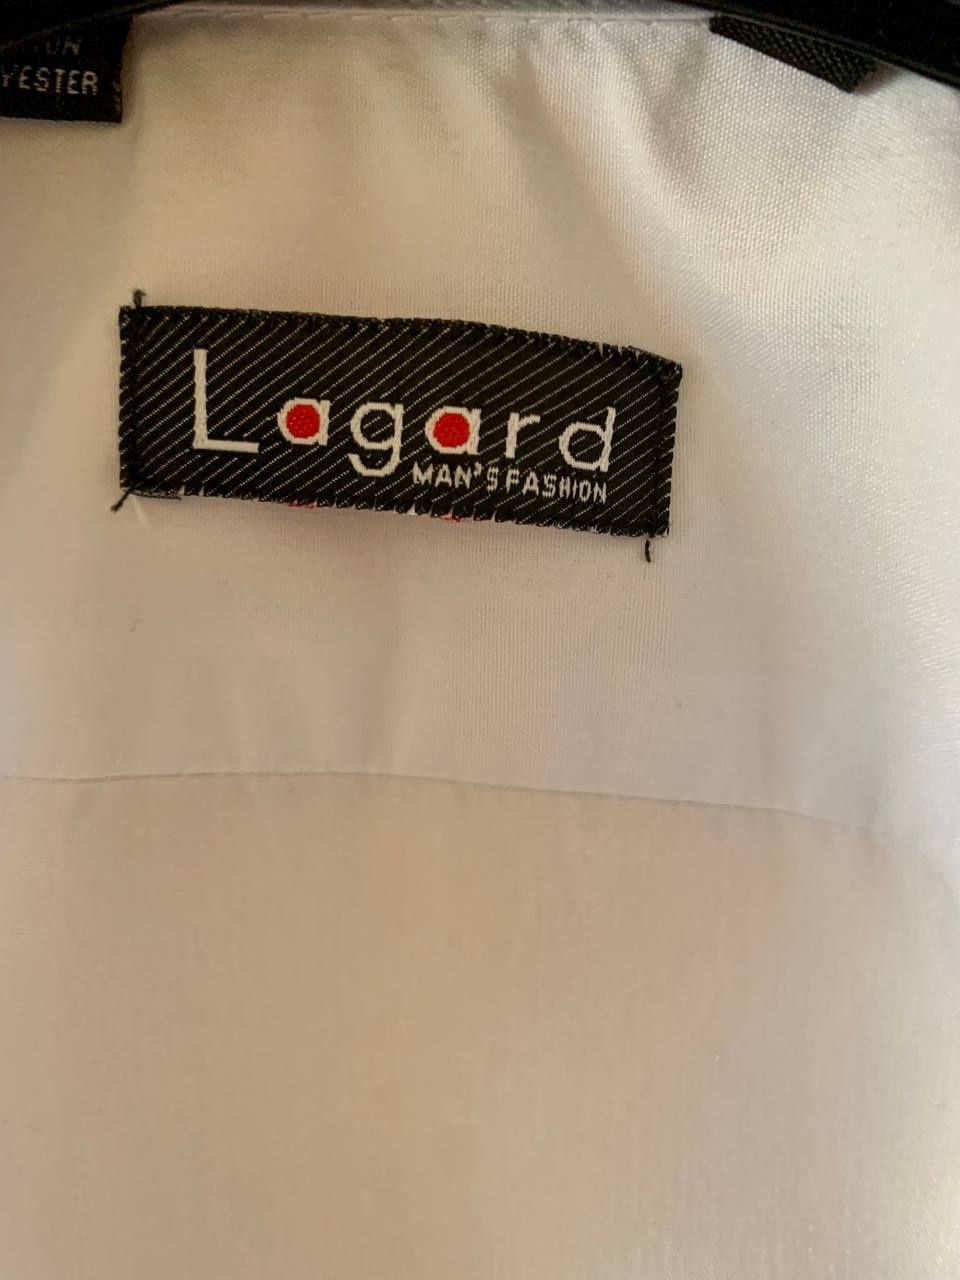 Рубашка детская с длинным рукавом белая Lagard для школьников.
Застеги